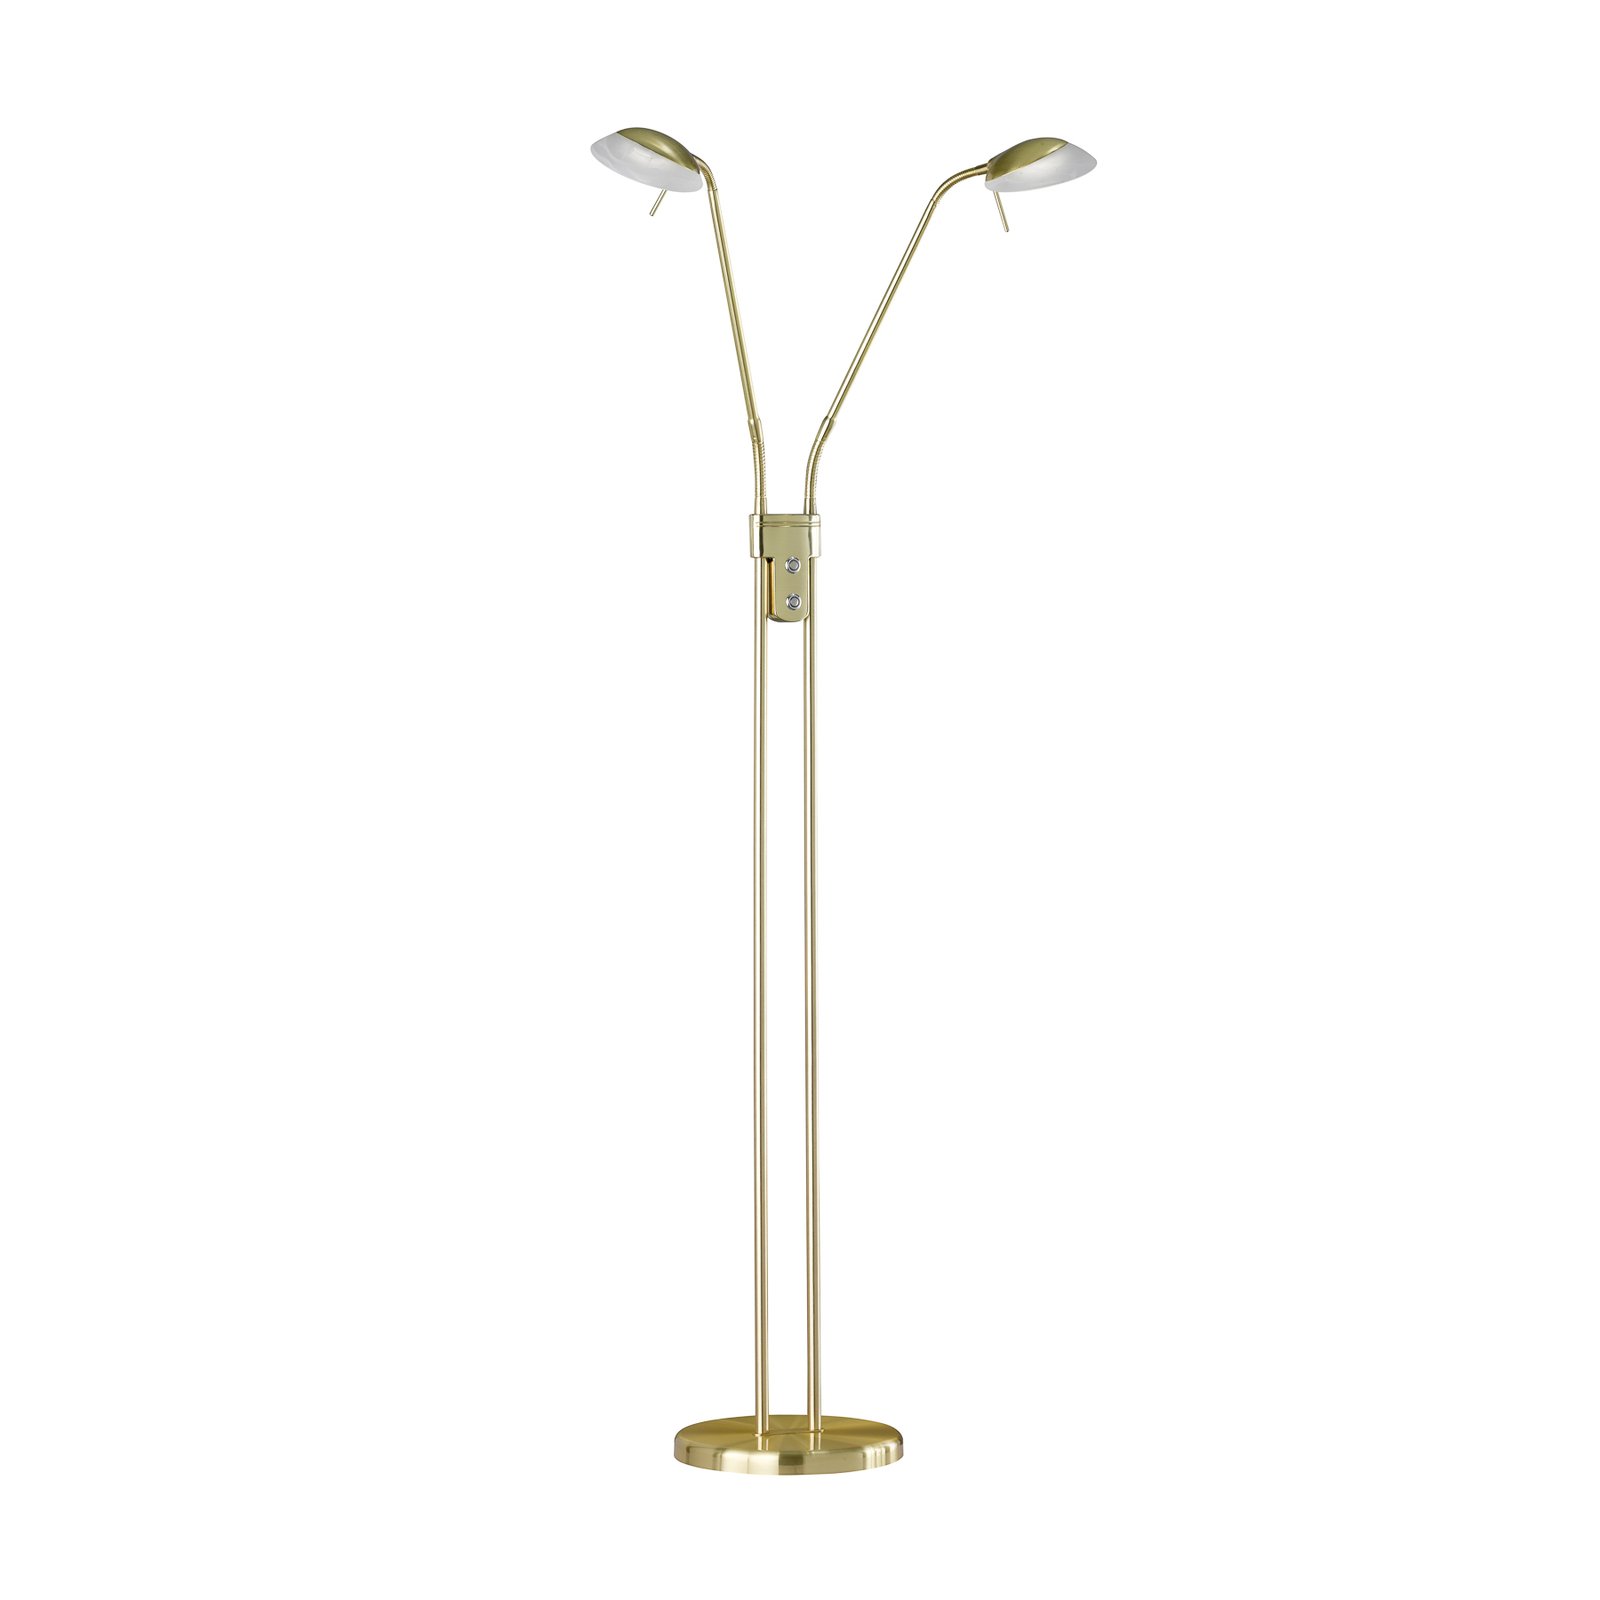 LED floor lamp Pool, brass-coloured, height 160 cm, 2-bulb.